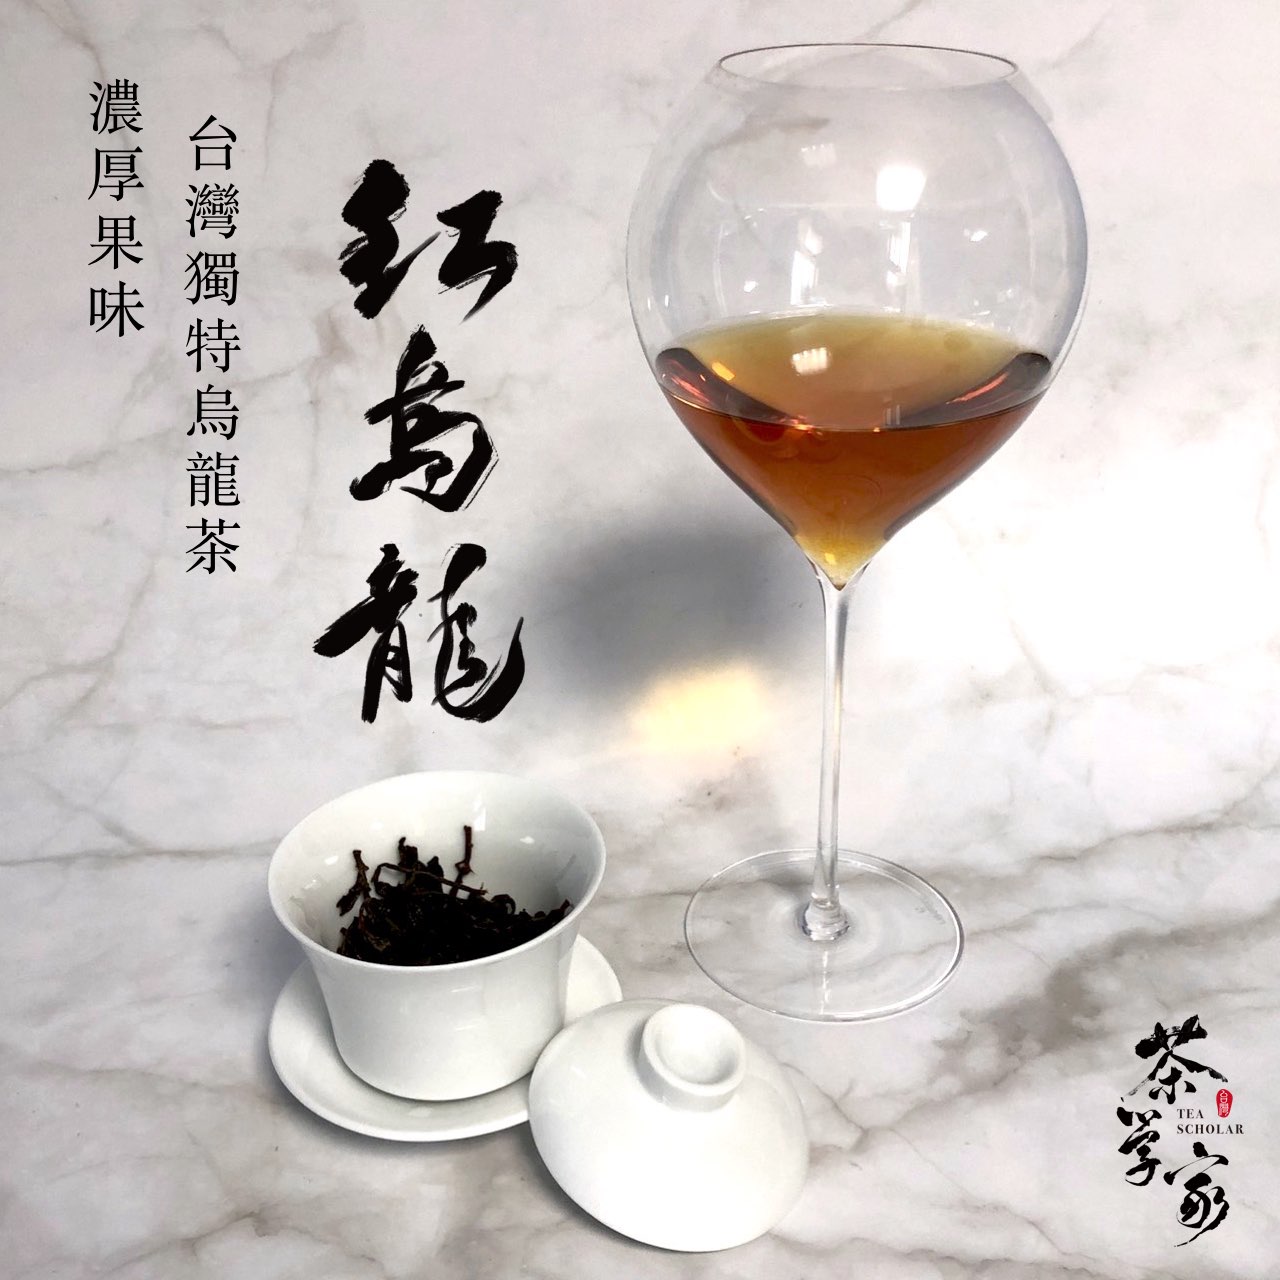 紅烏龍不是紅水烏龍，是台灣獨特烏龍茶！